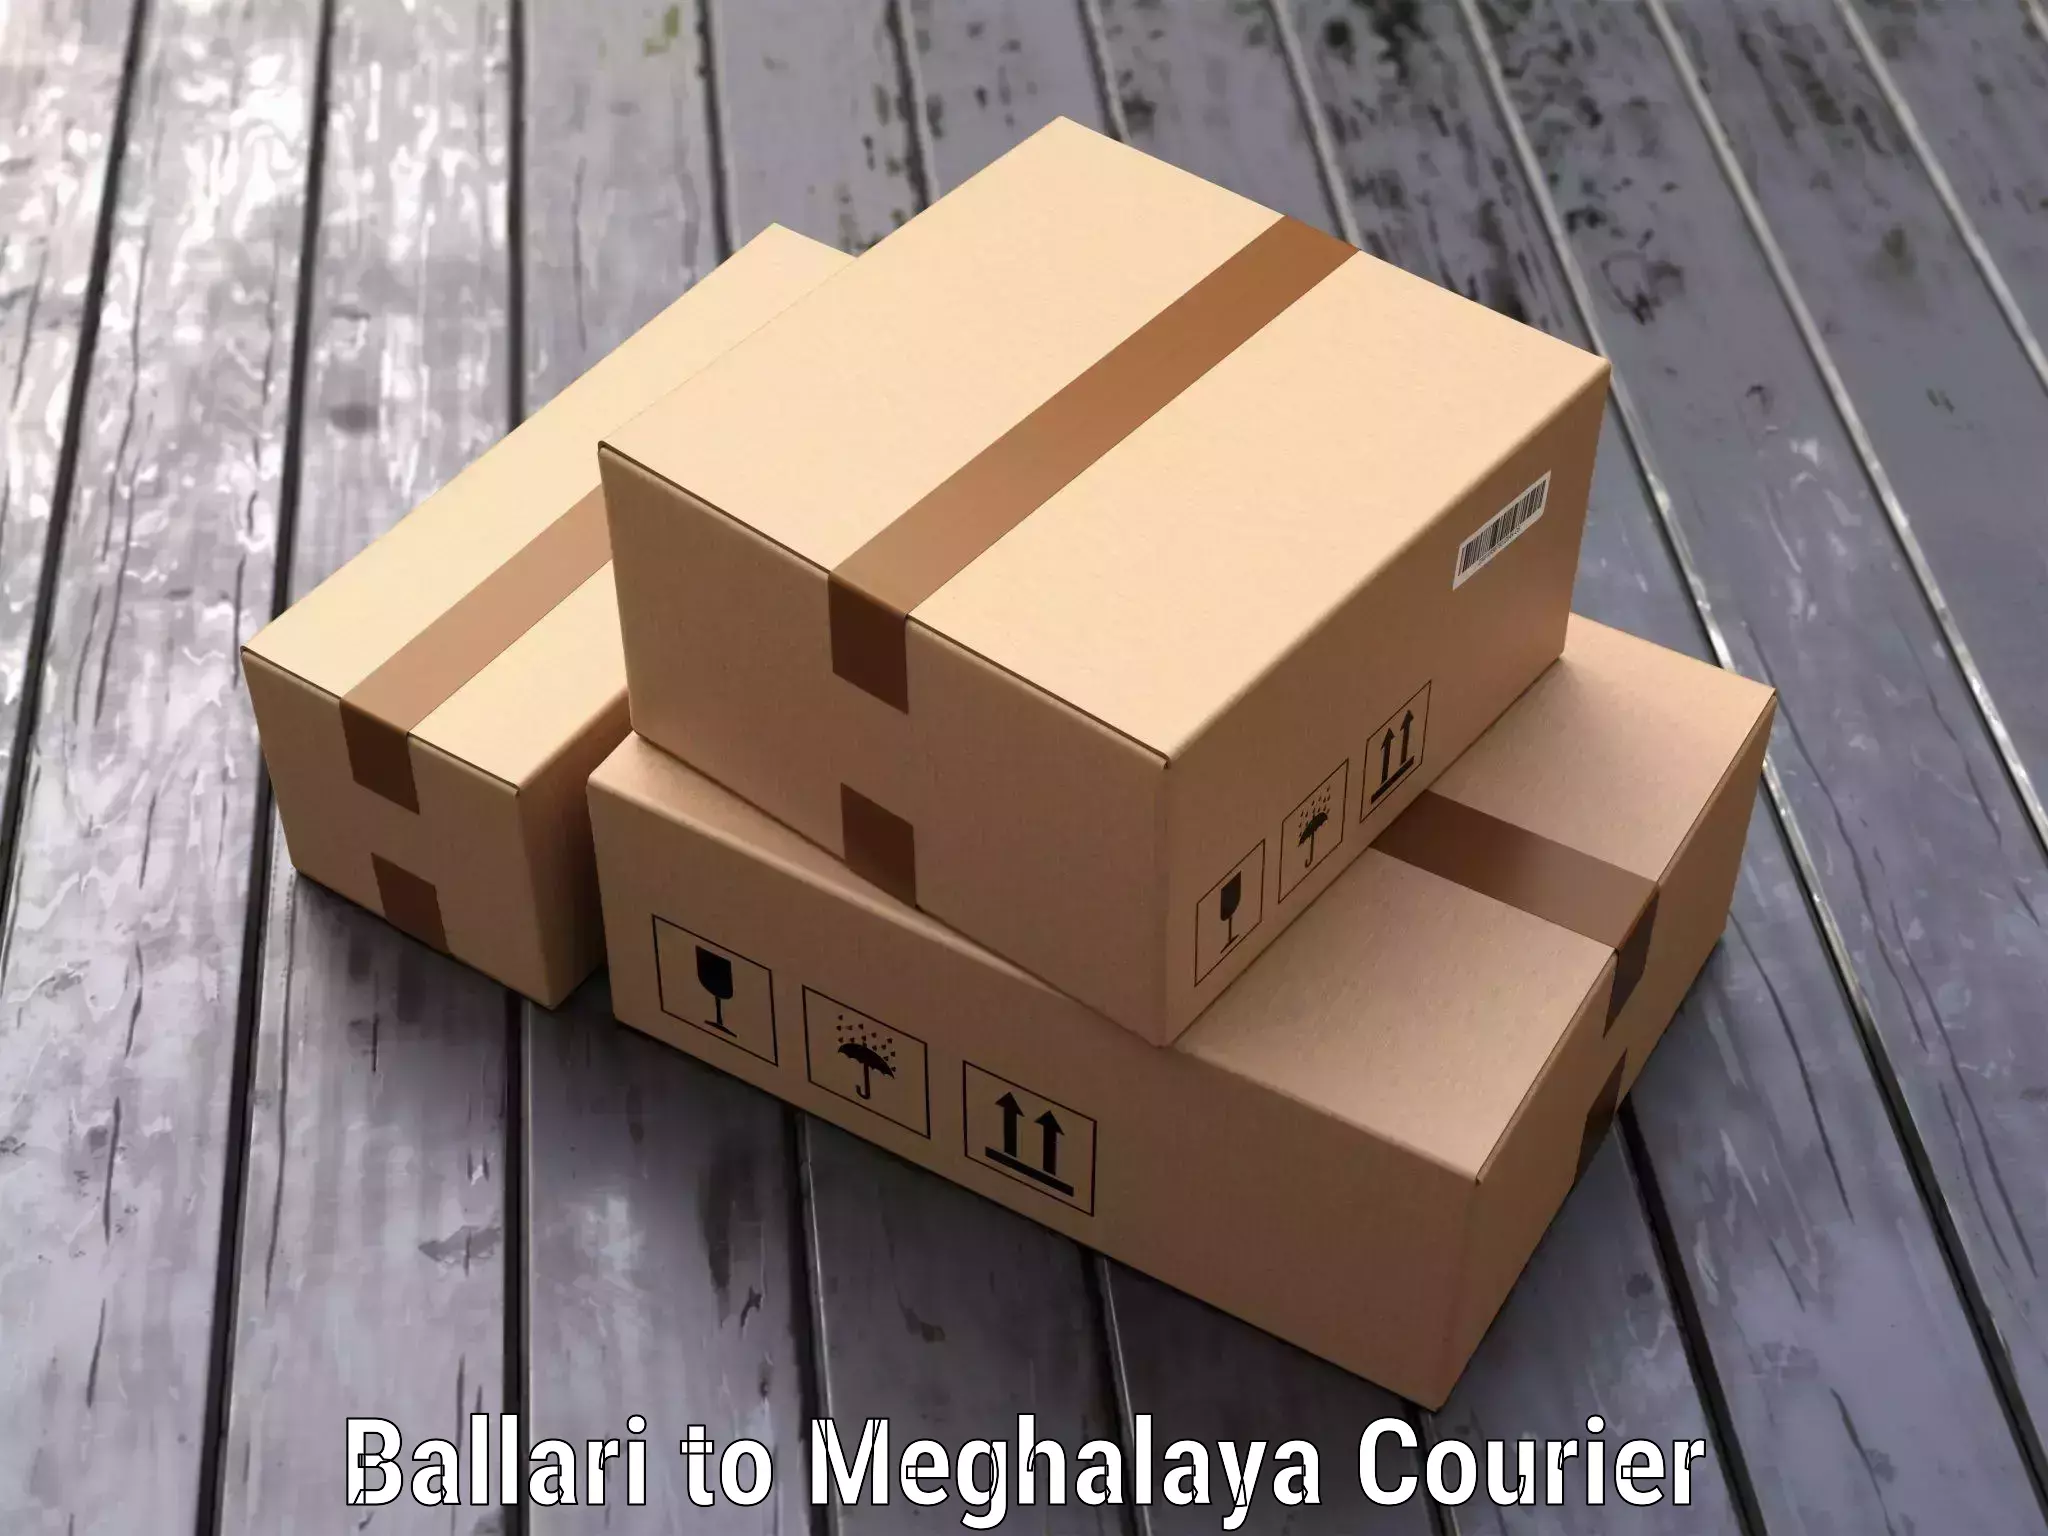 Luggage delivery network Ballari to Meghalaya